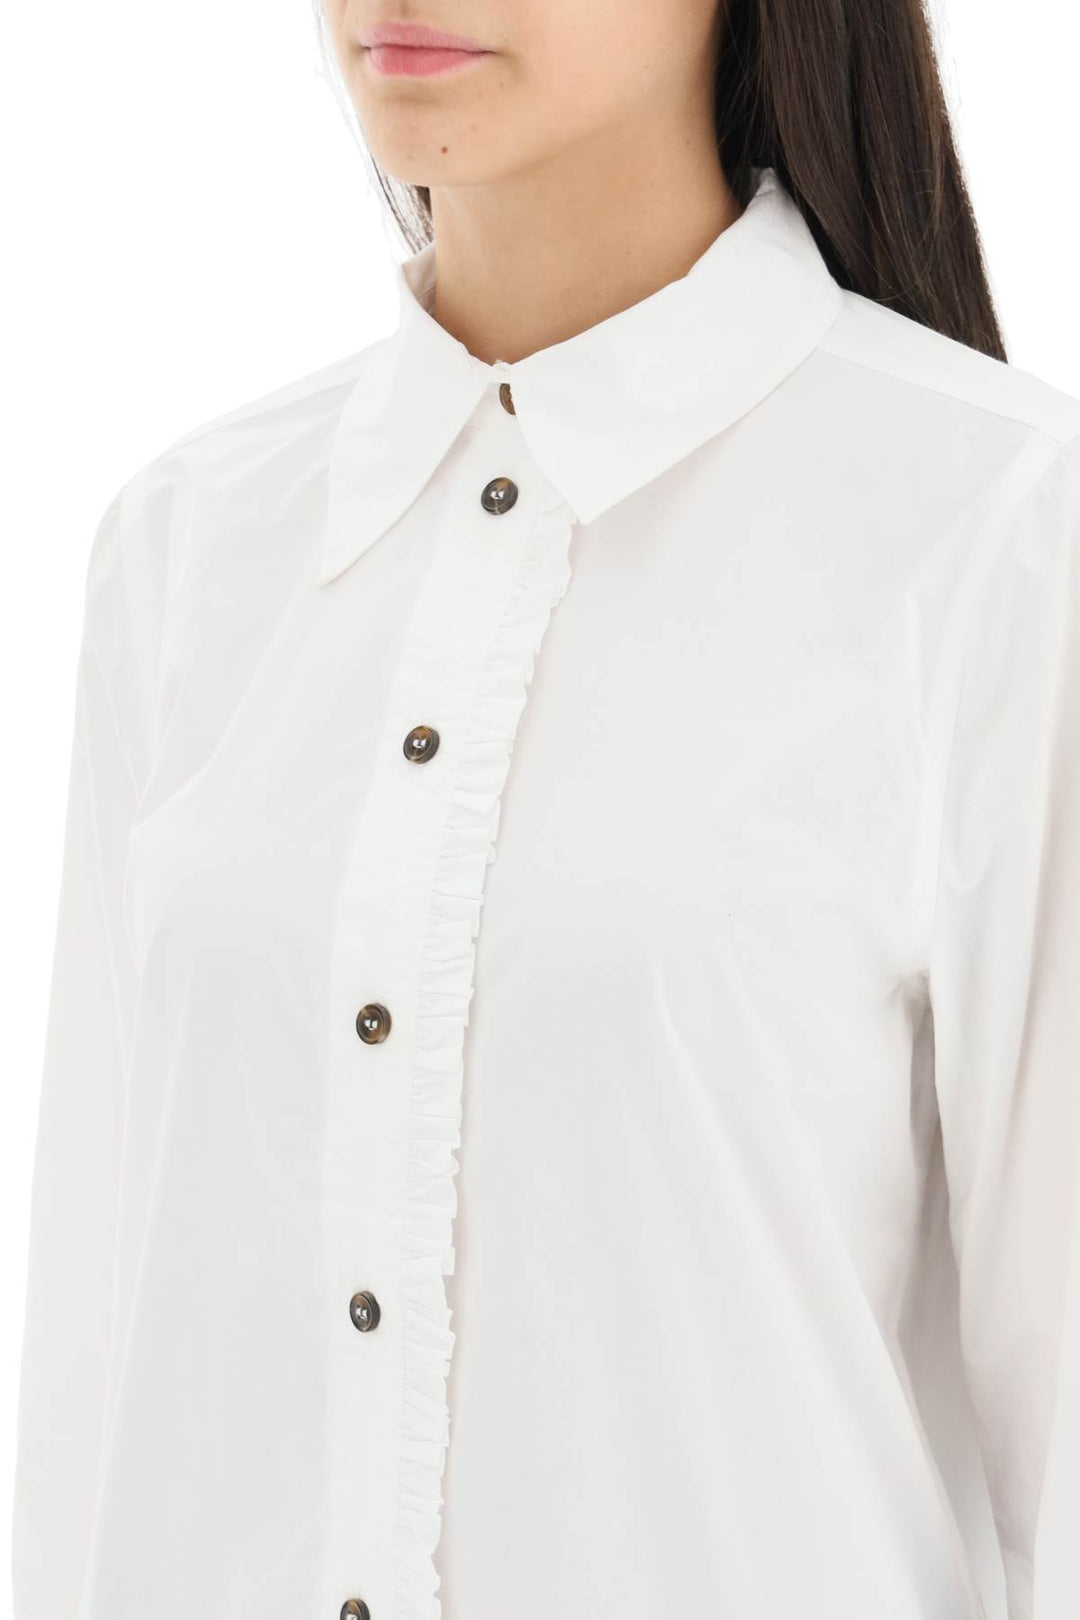 Camicia In Cotone Organico Con Rouches - Ganni - Donna